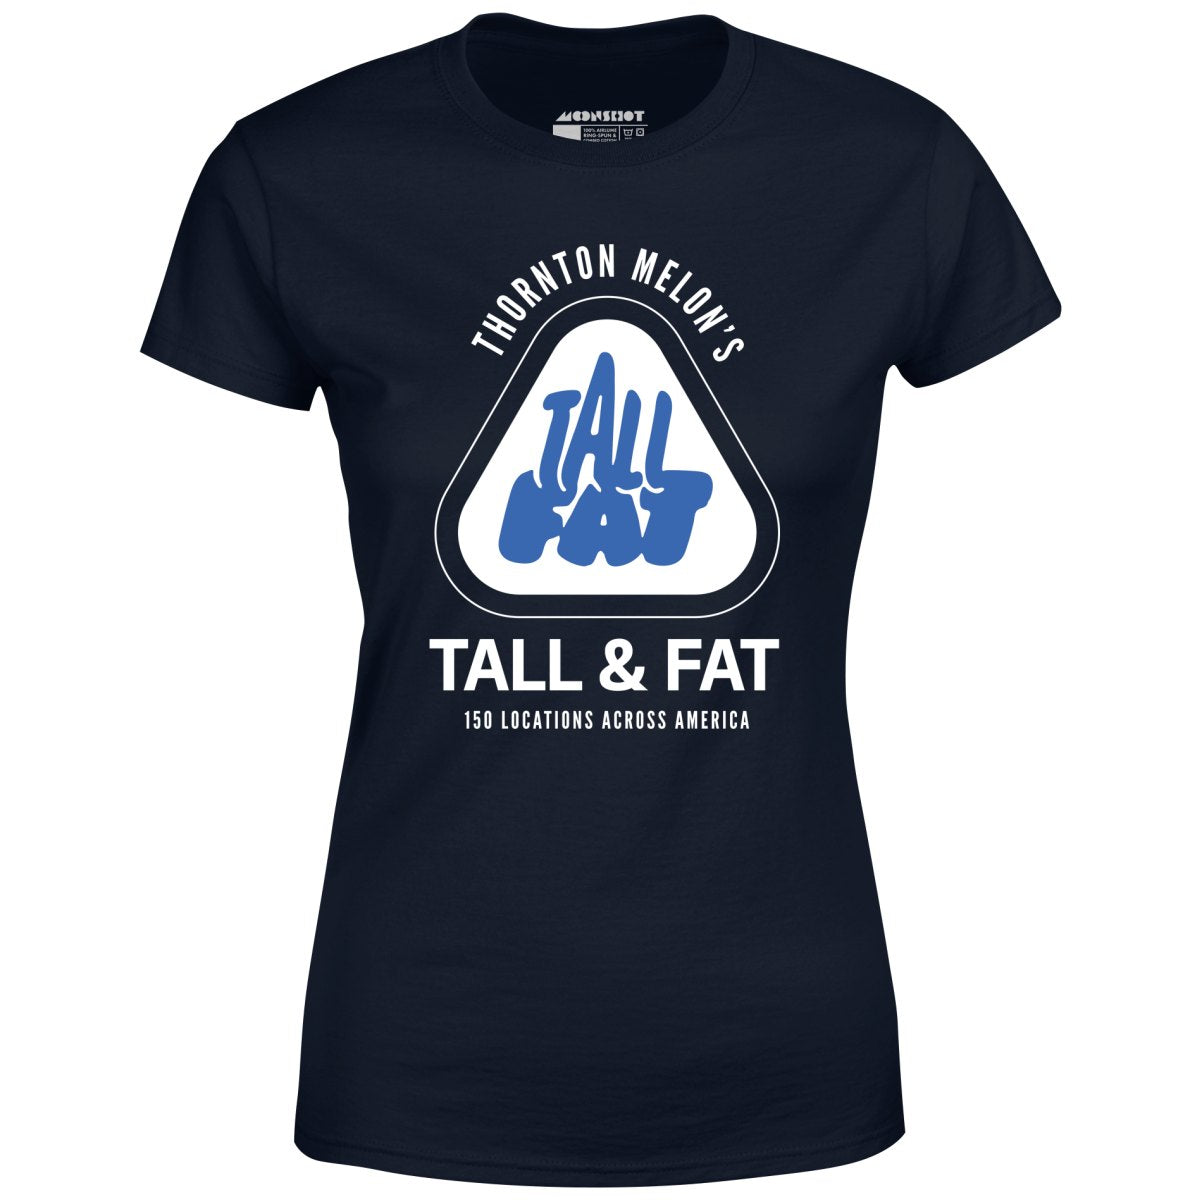 Thornton Melon's Tall & Fat - Women's T-Shirt